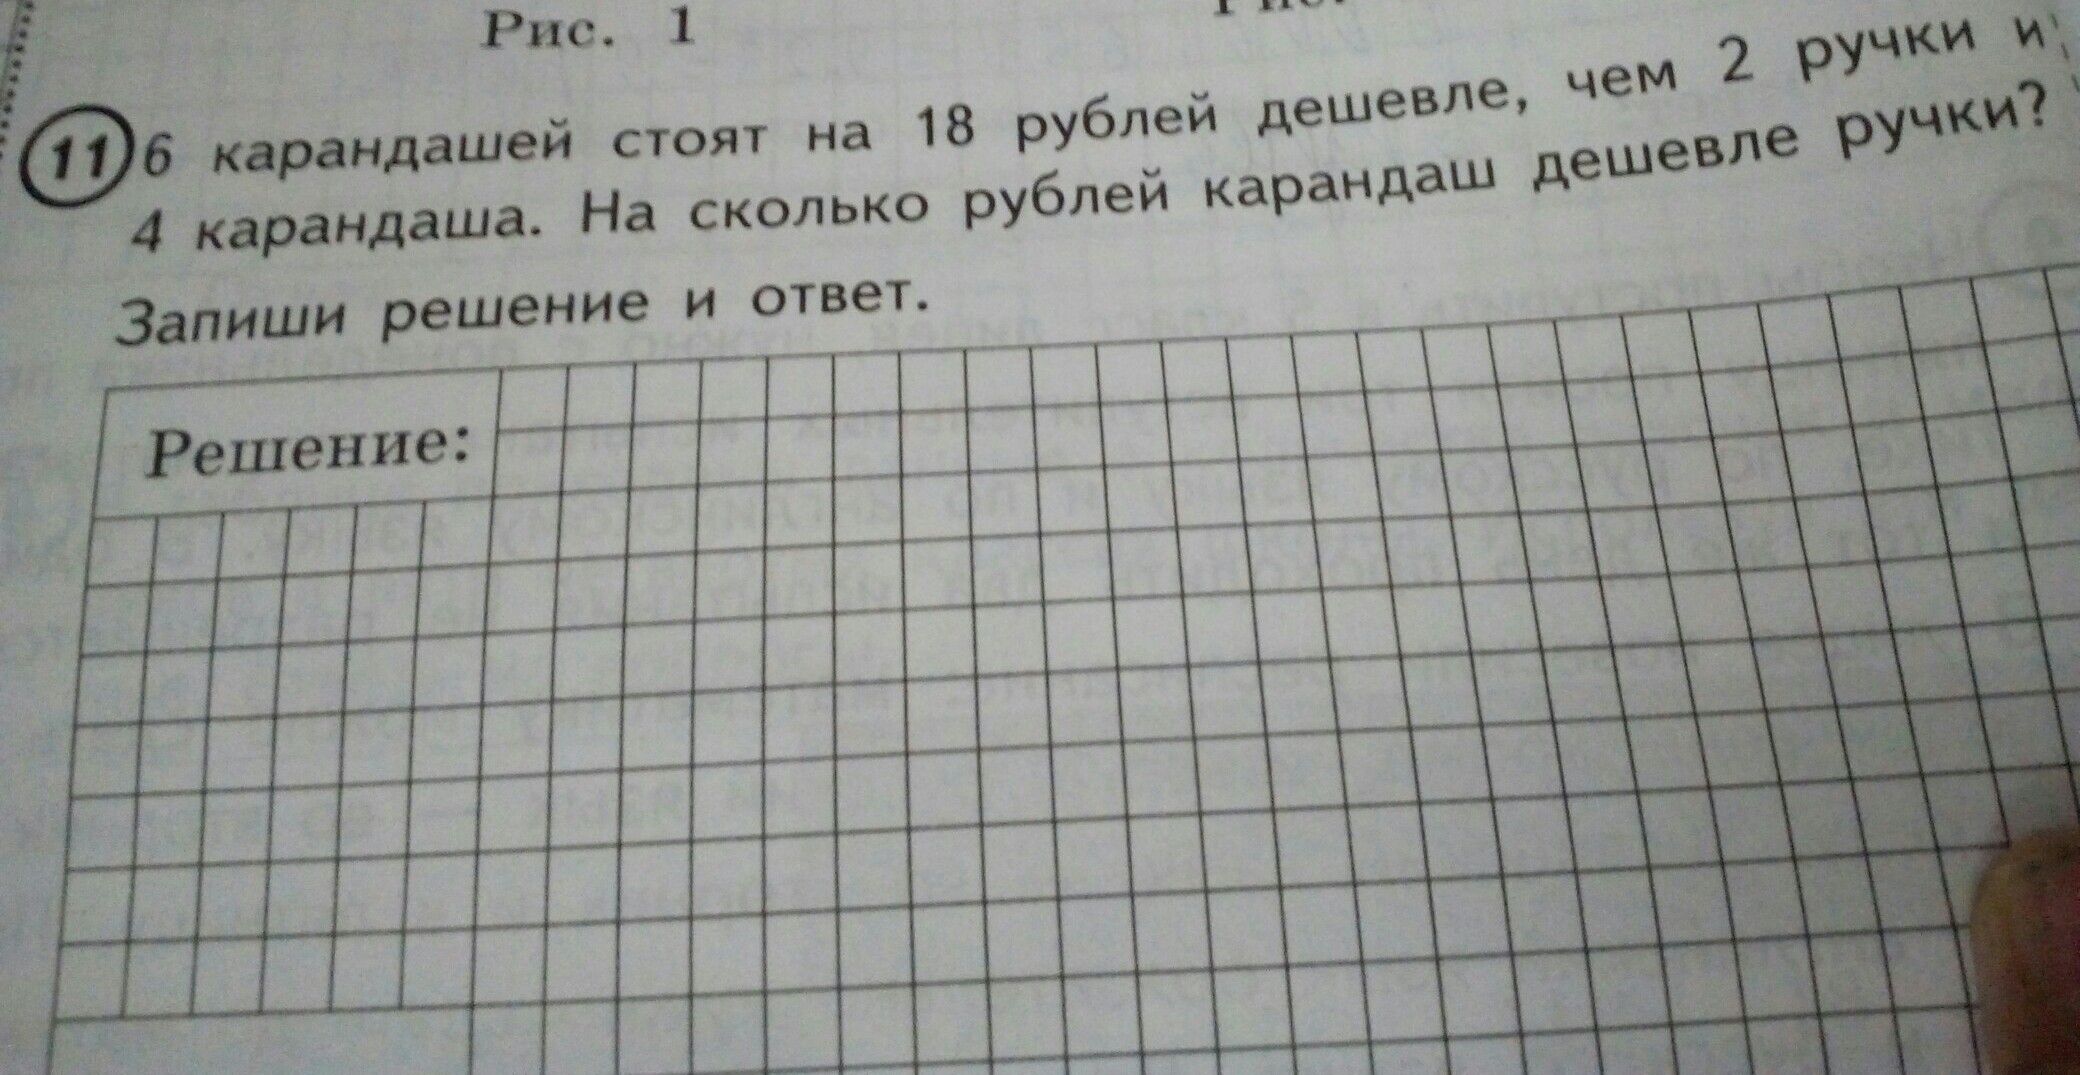 Карандаш и ручка вместе стоят 8 рублей. 6 Карандашей стоят. 5 Карандашей стоят. 5 Карандашей стоят на 16. Карандаш дешевле ручки на 2 рубля.